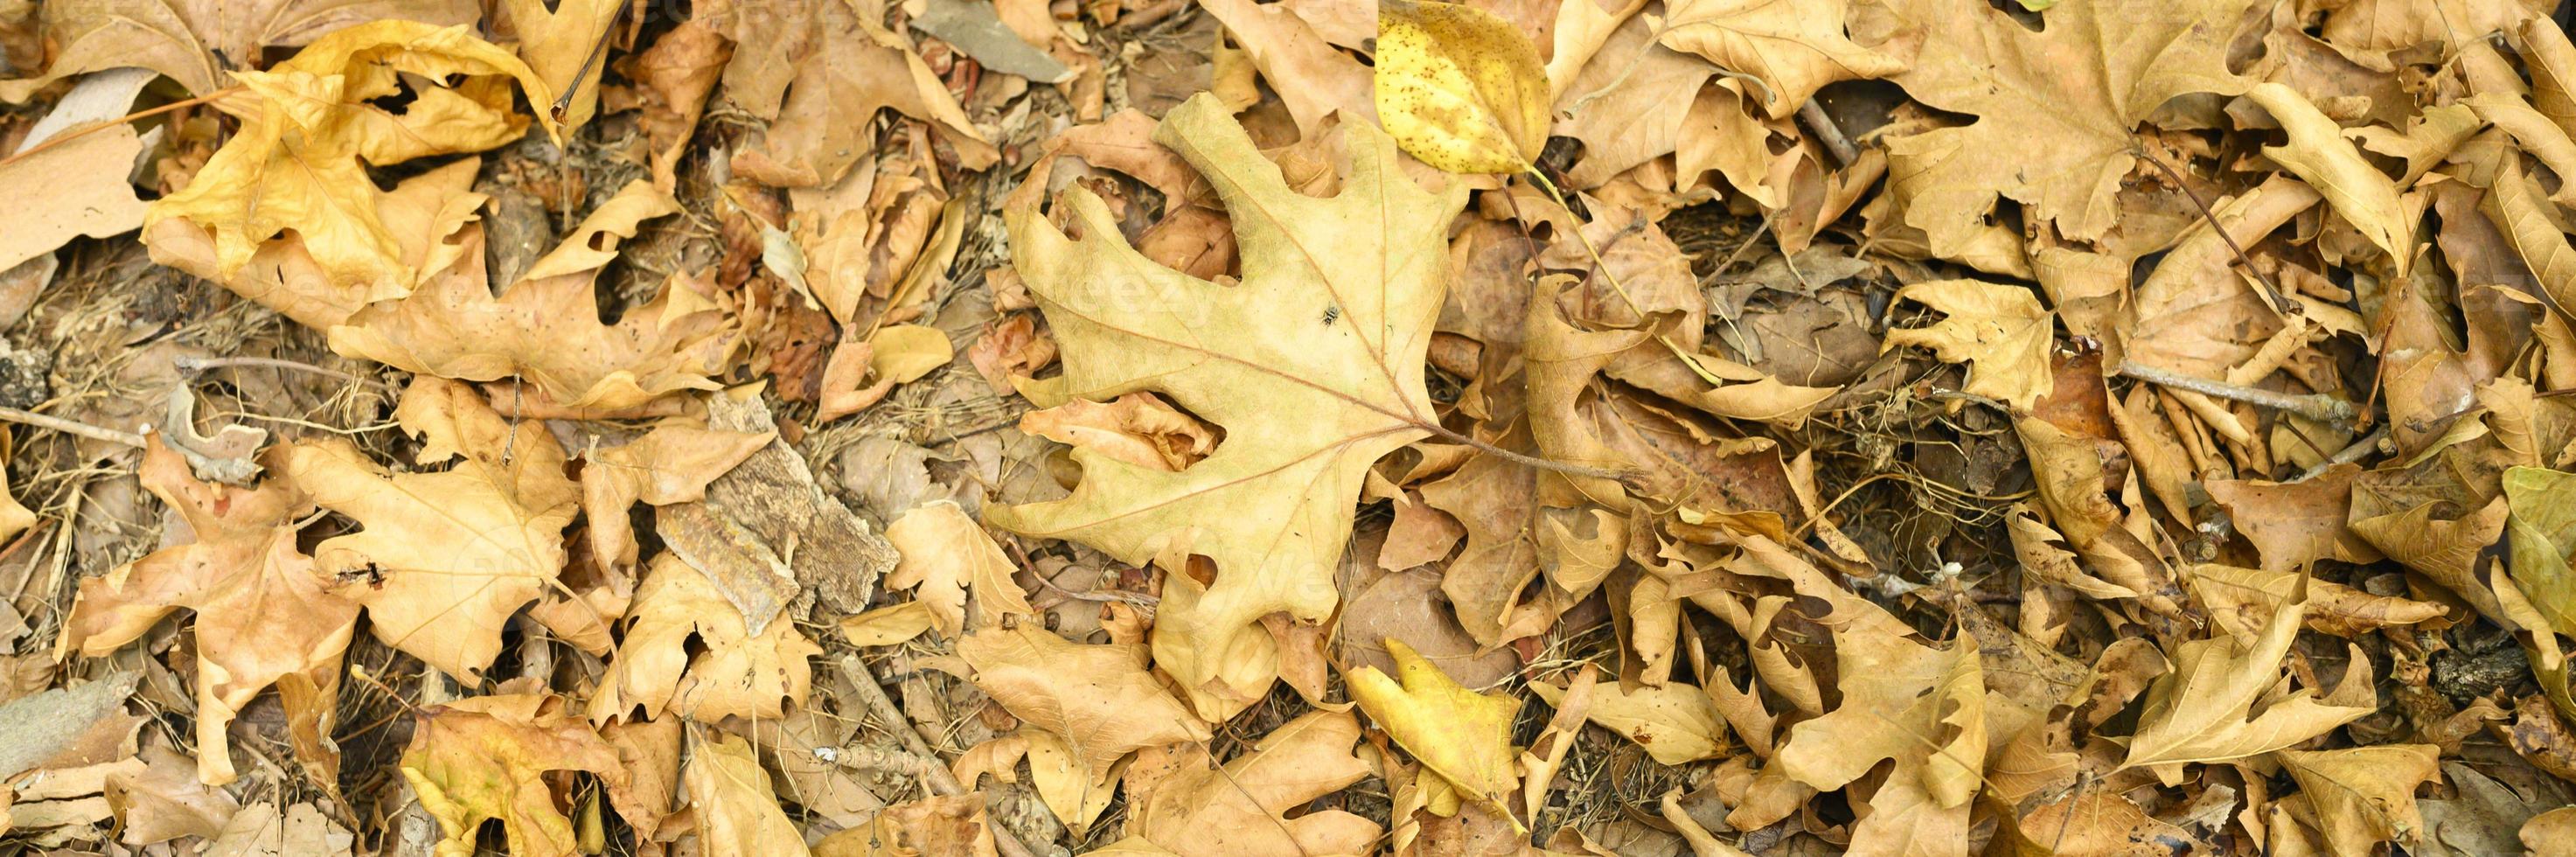 Fond texturé de feuilles d'automne tombées sèches et fanées des érables photo